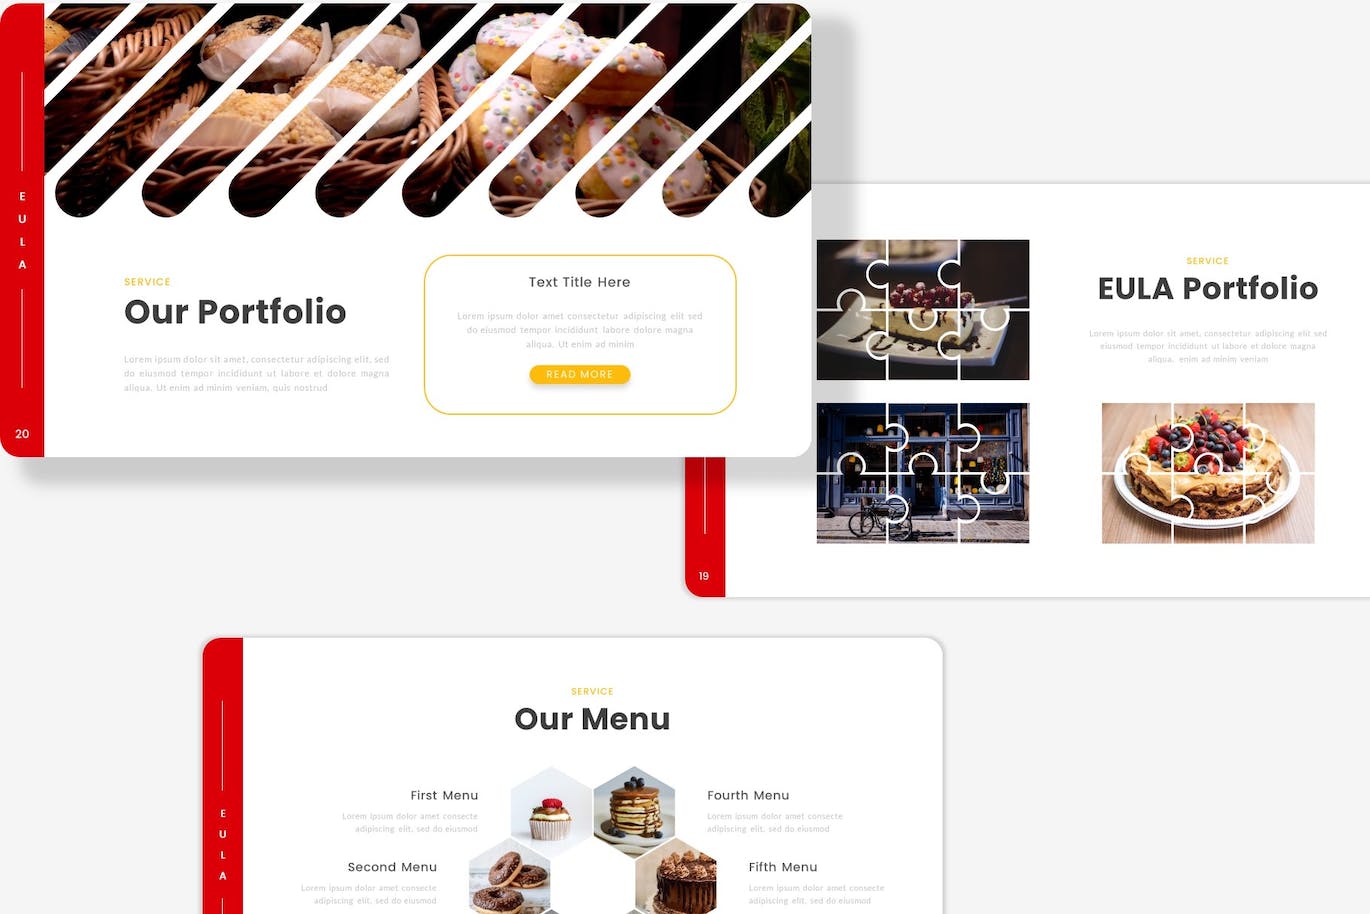 食品和餐厅Powerpoint模板 Eula – Food and Restaurant PowerPoint Template 幻灯图表 第2张